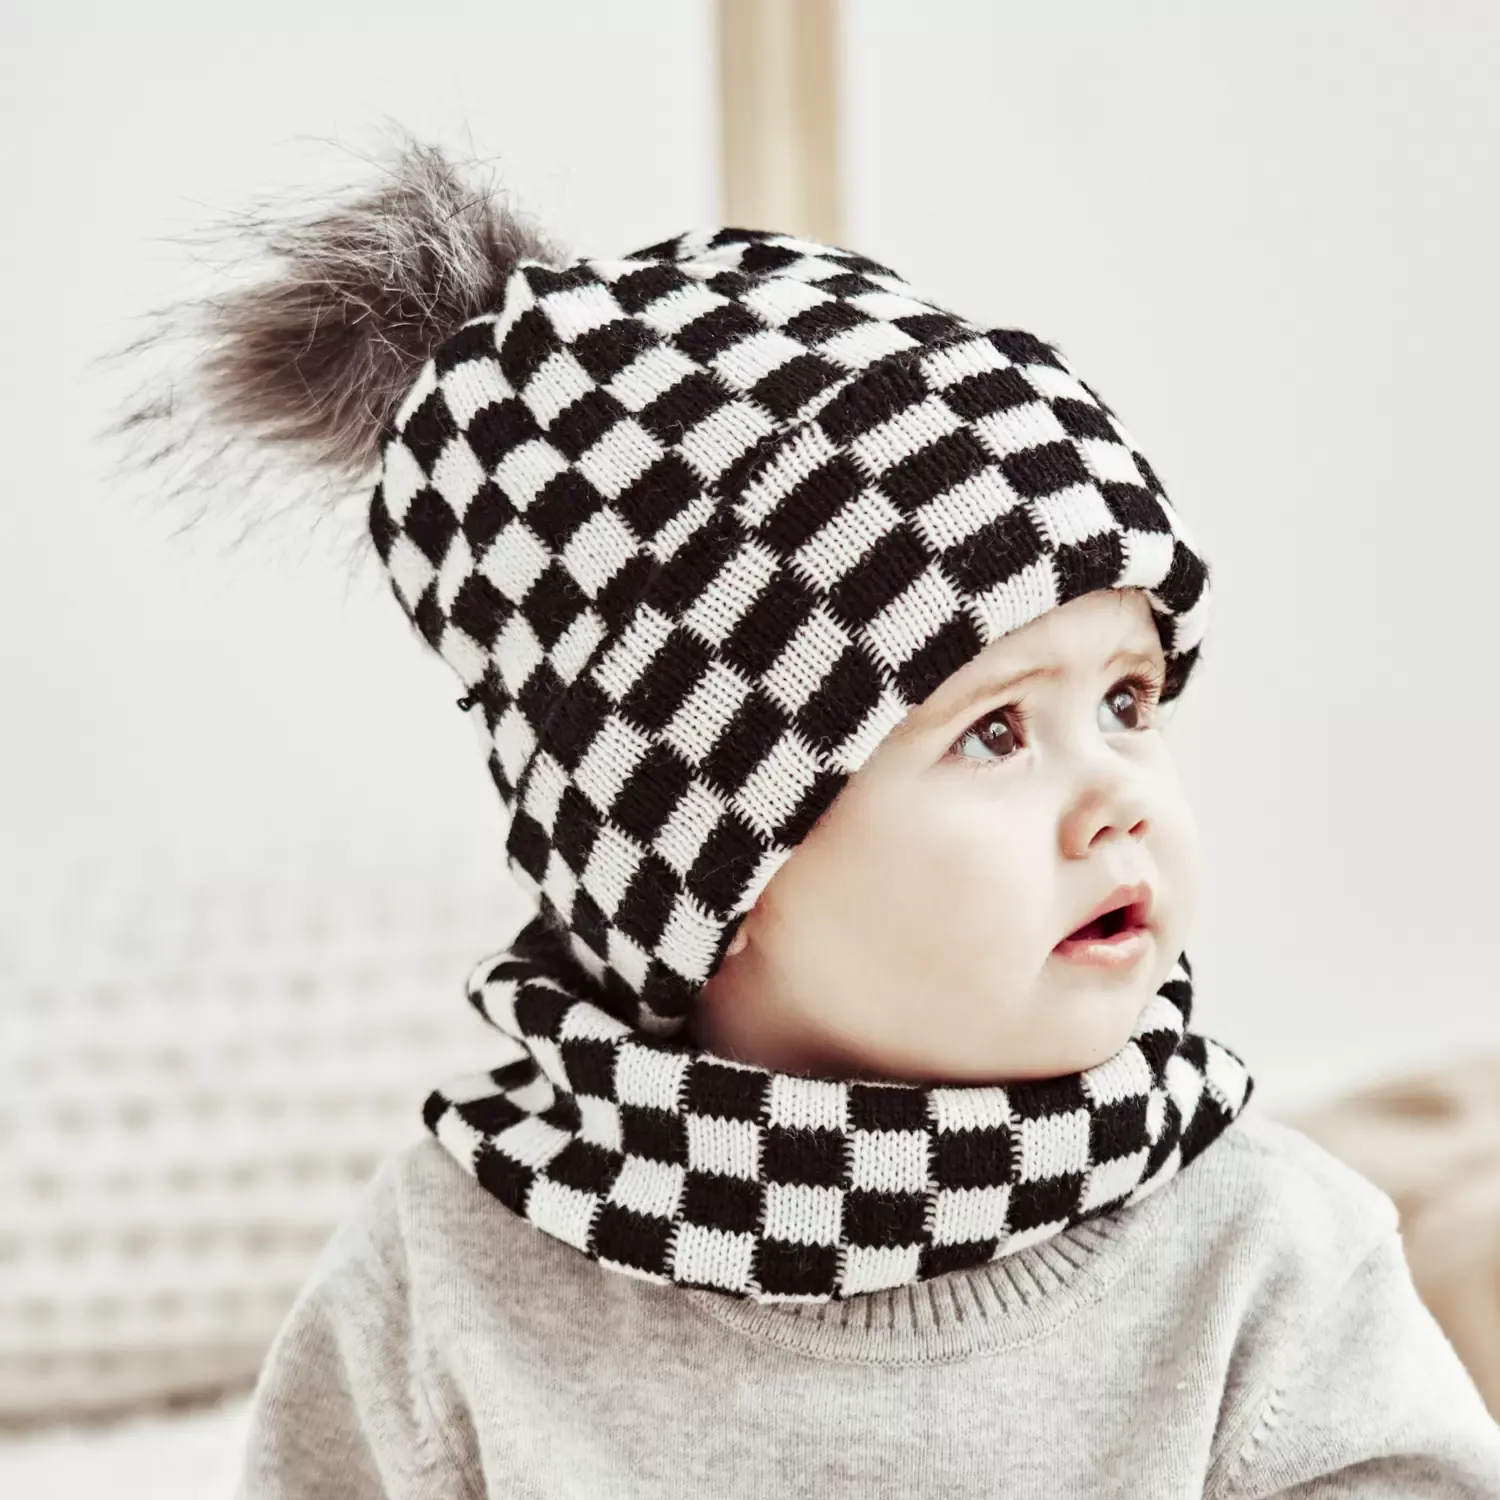 M379 New Autumn Winter Baby Kids Knitted Hat Neck Warmer Set Children Knitwear PLaid Beanie Skull Cap Neckerchief